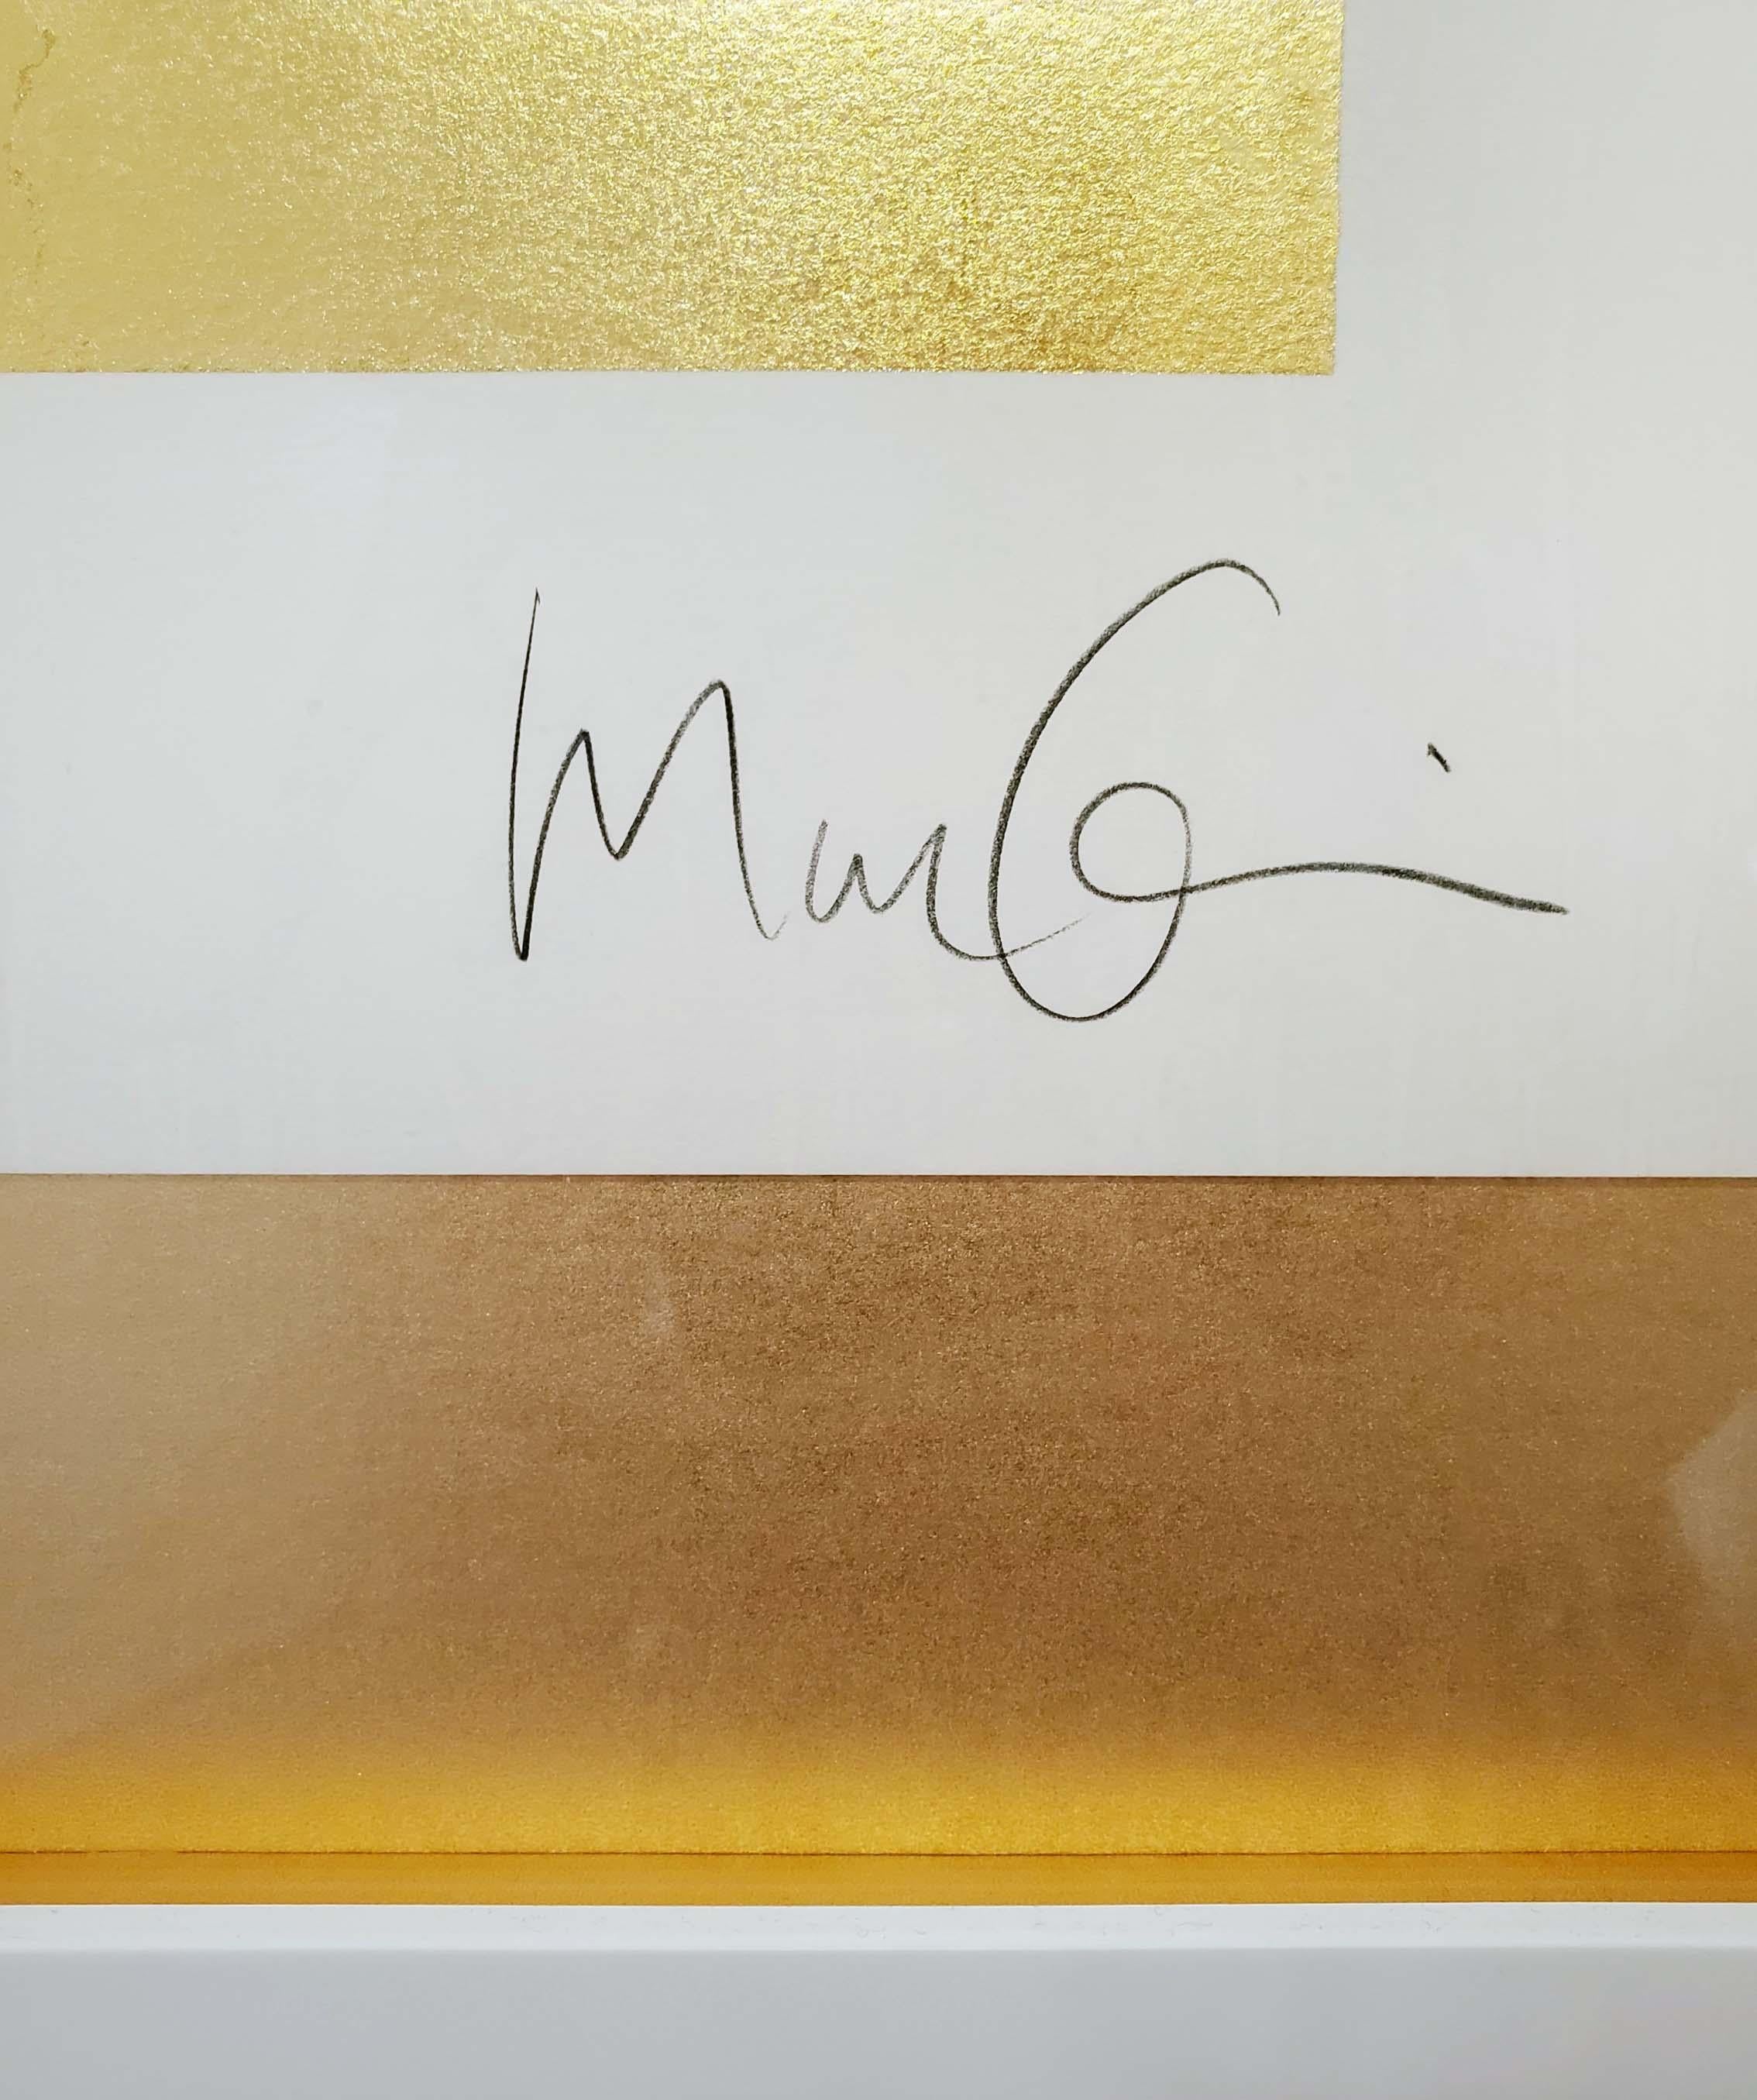 Künstler:  Quinn, Marc 
Titel:  Kate Moss auf Gold
Datum:  2012
Medium:  Siebdruck, handgefertigt mit Blattgoldüberglasur
Ungerahmt Abmessungen:  27.5